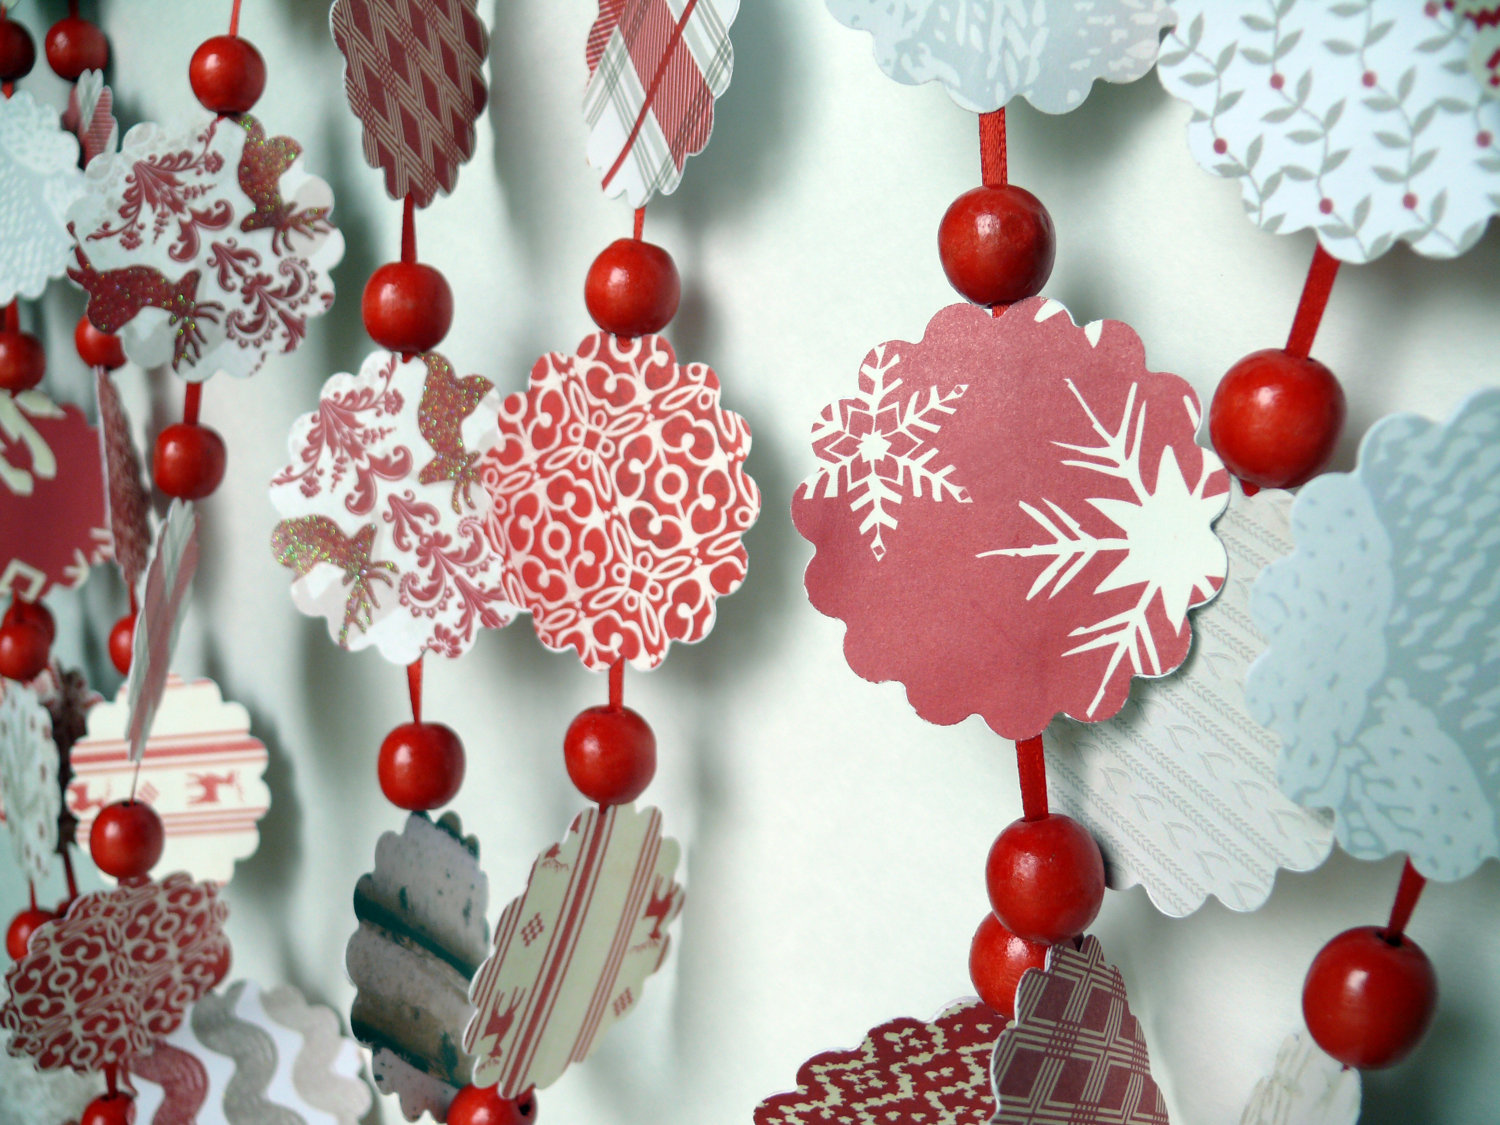 Paper garlands for festive decoration